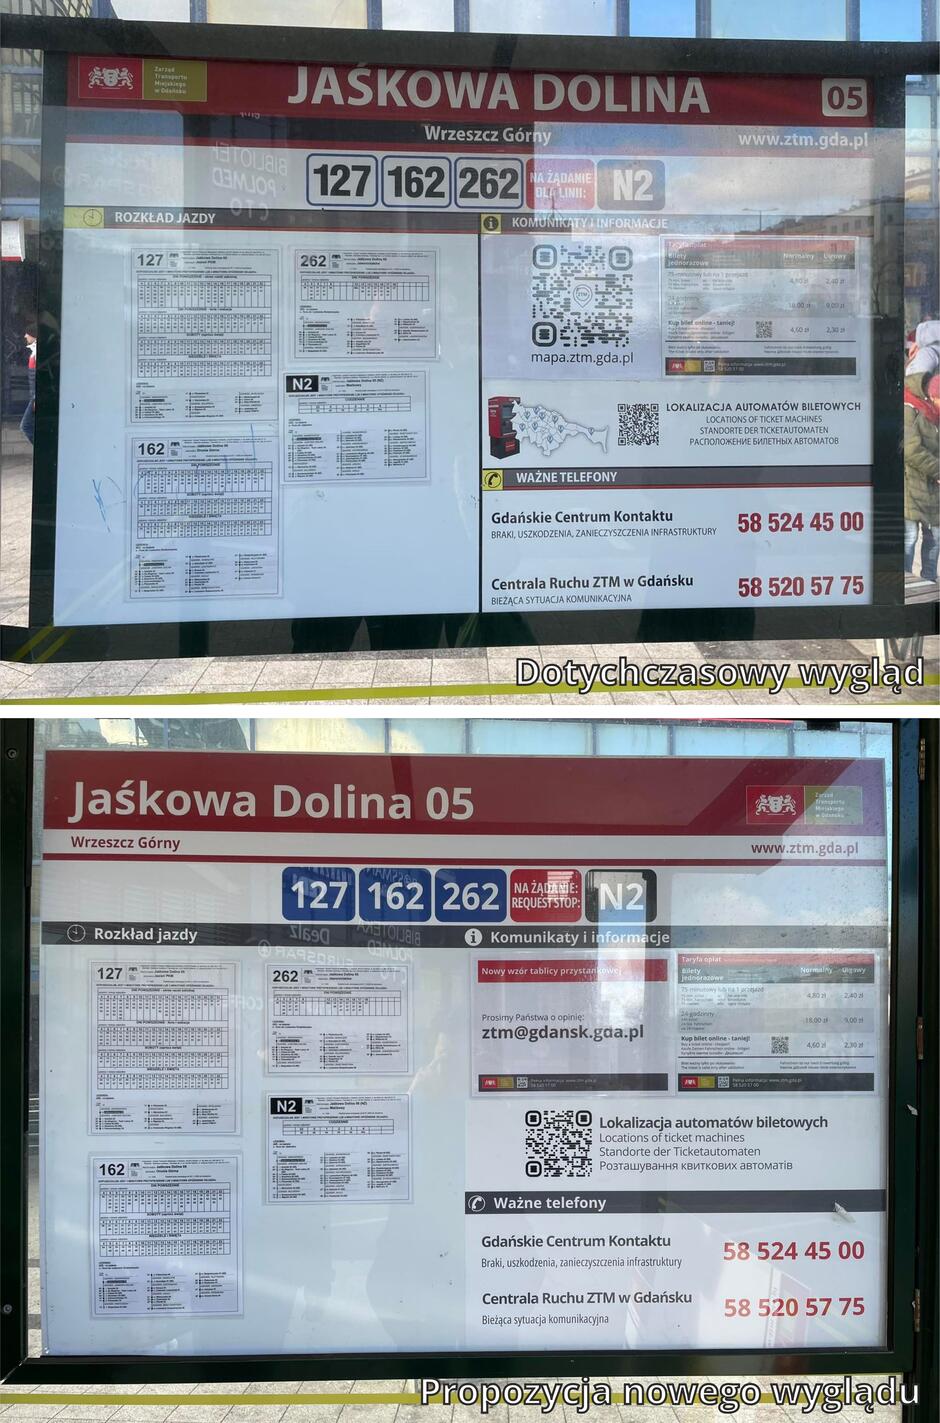 dwa zdjęcia przedstawiają dwie tablice informacyjne dla pasażerów, u góry jest obecna tablica, a na dole proponowany jej nowy wygląd